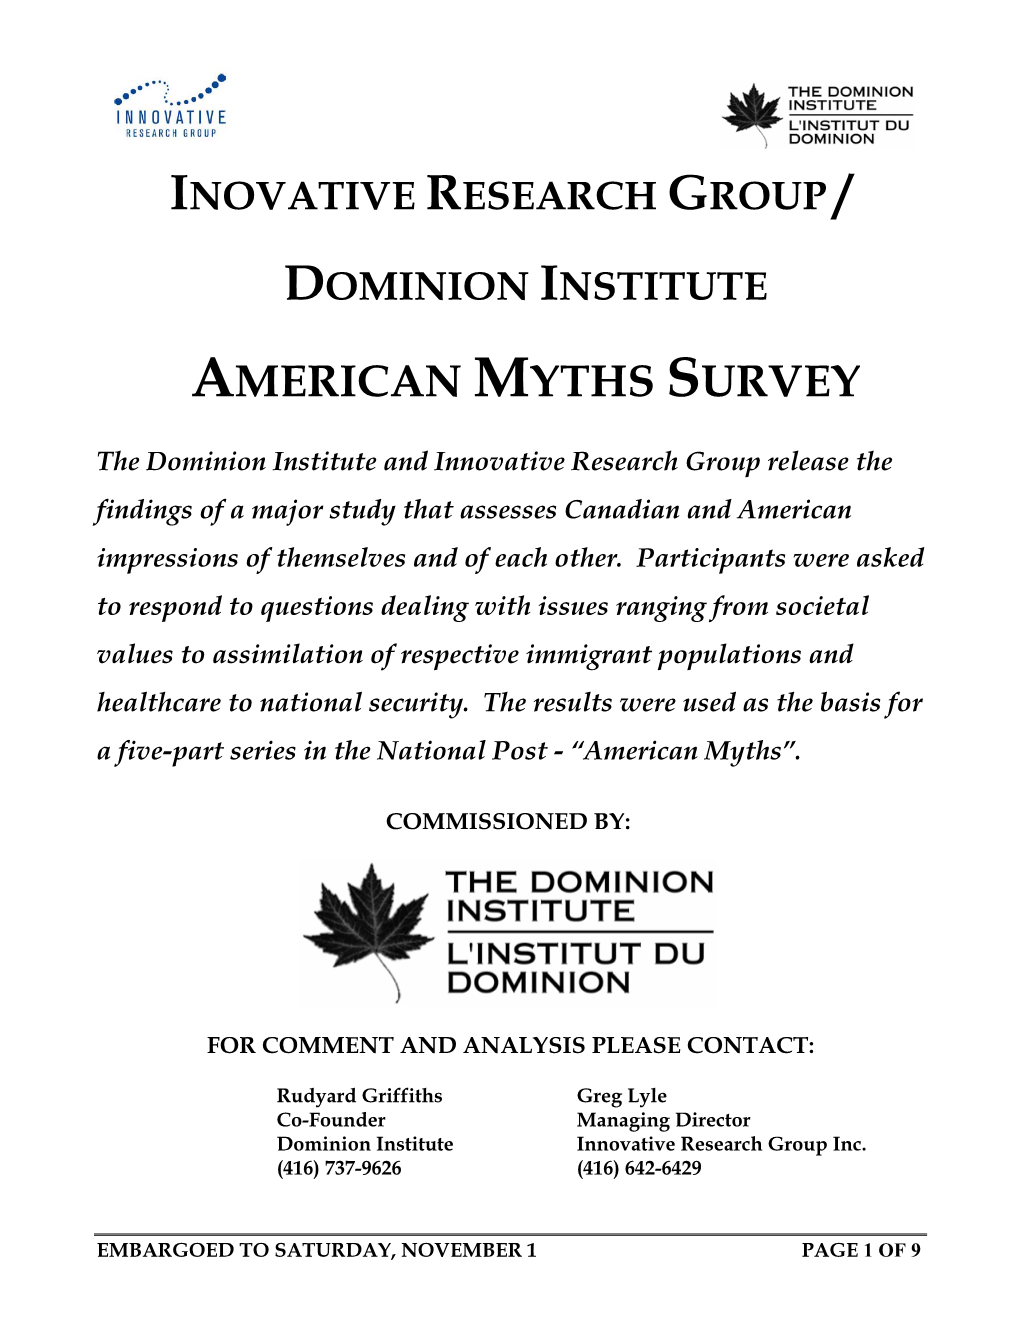 American Myths Survey